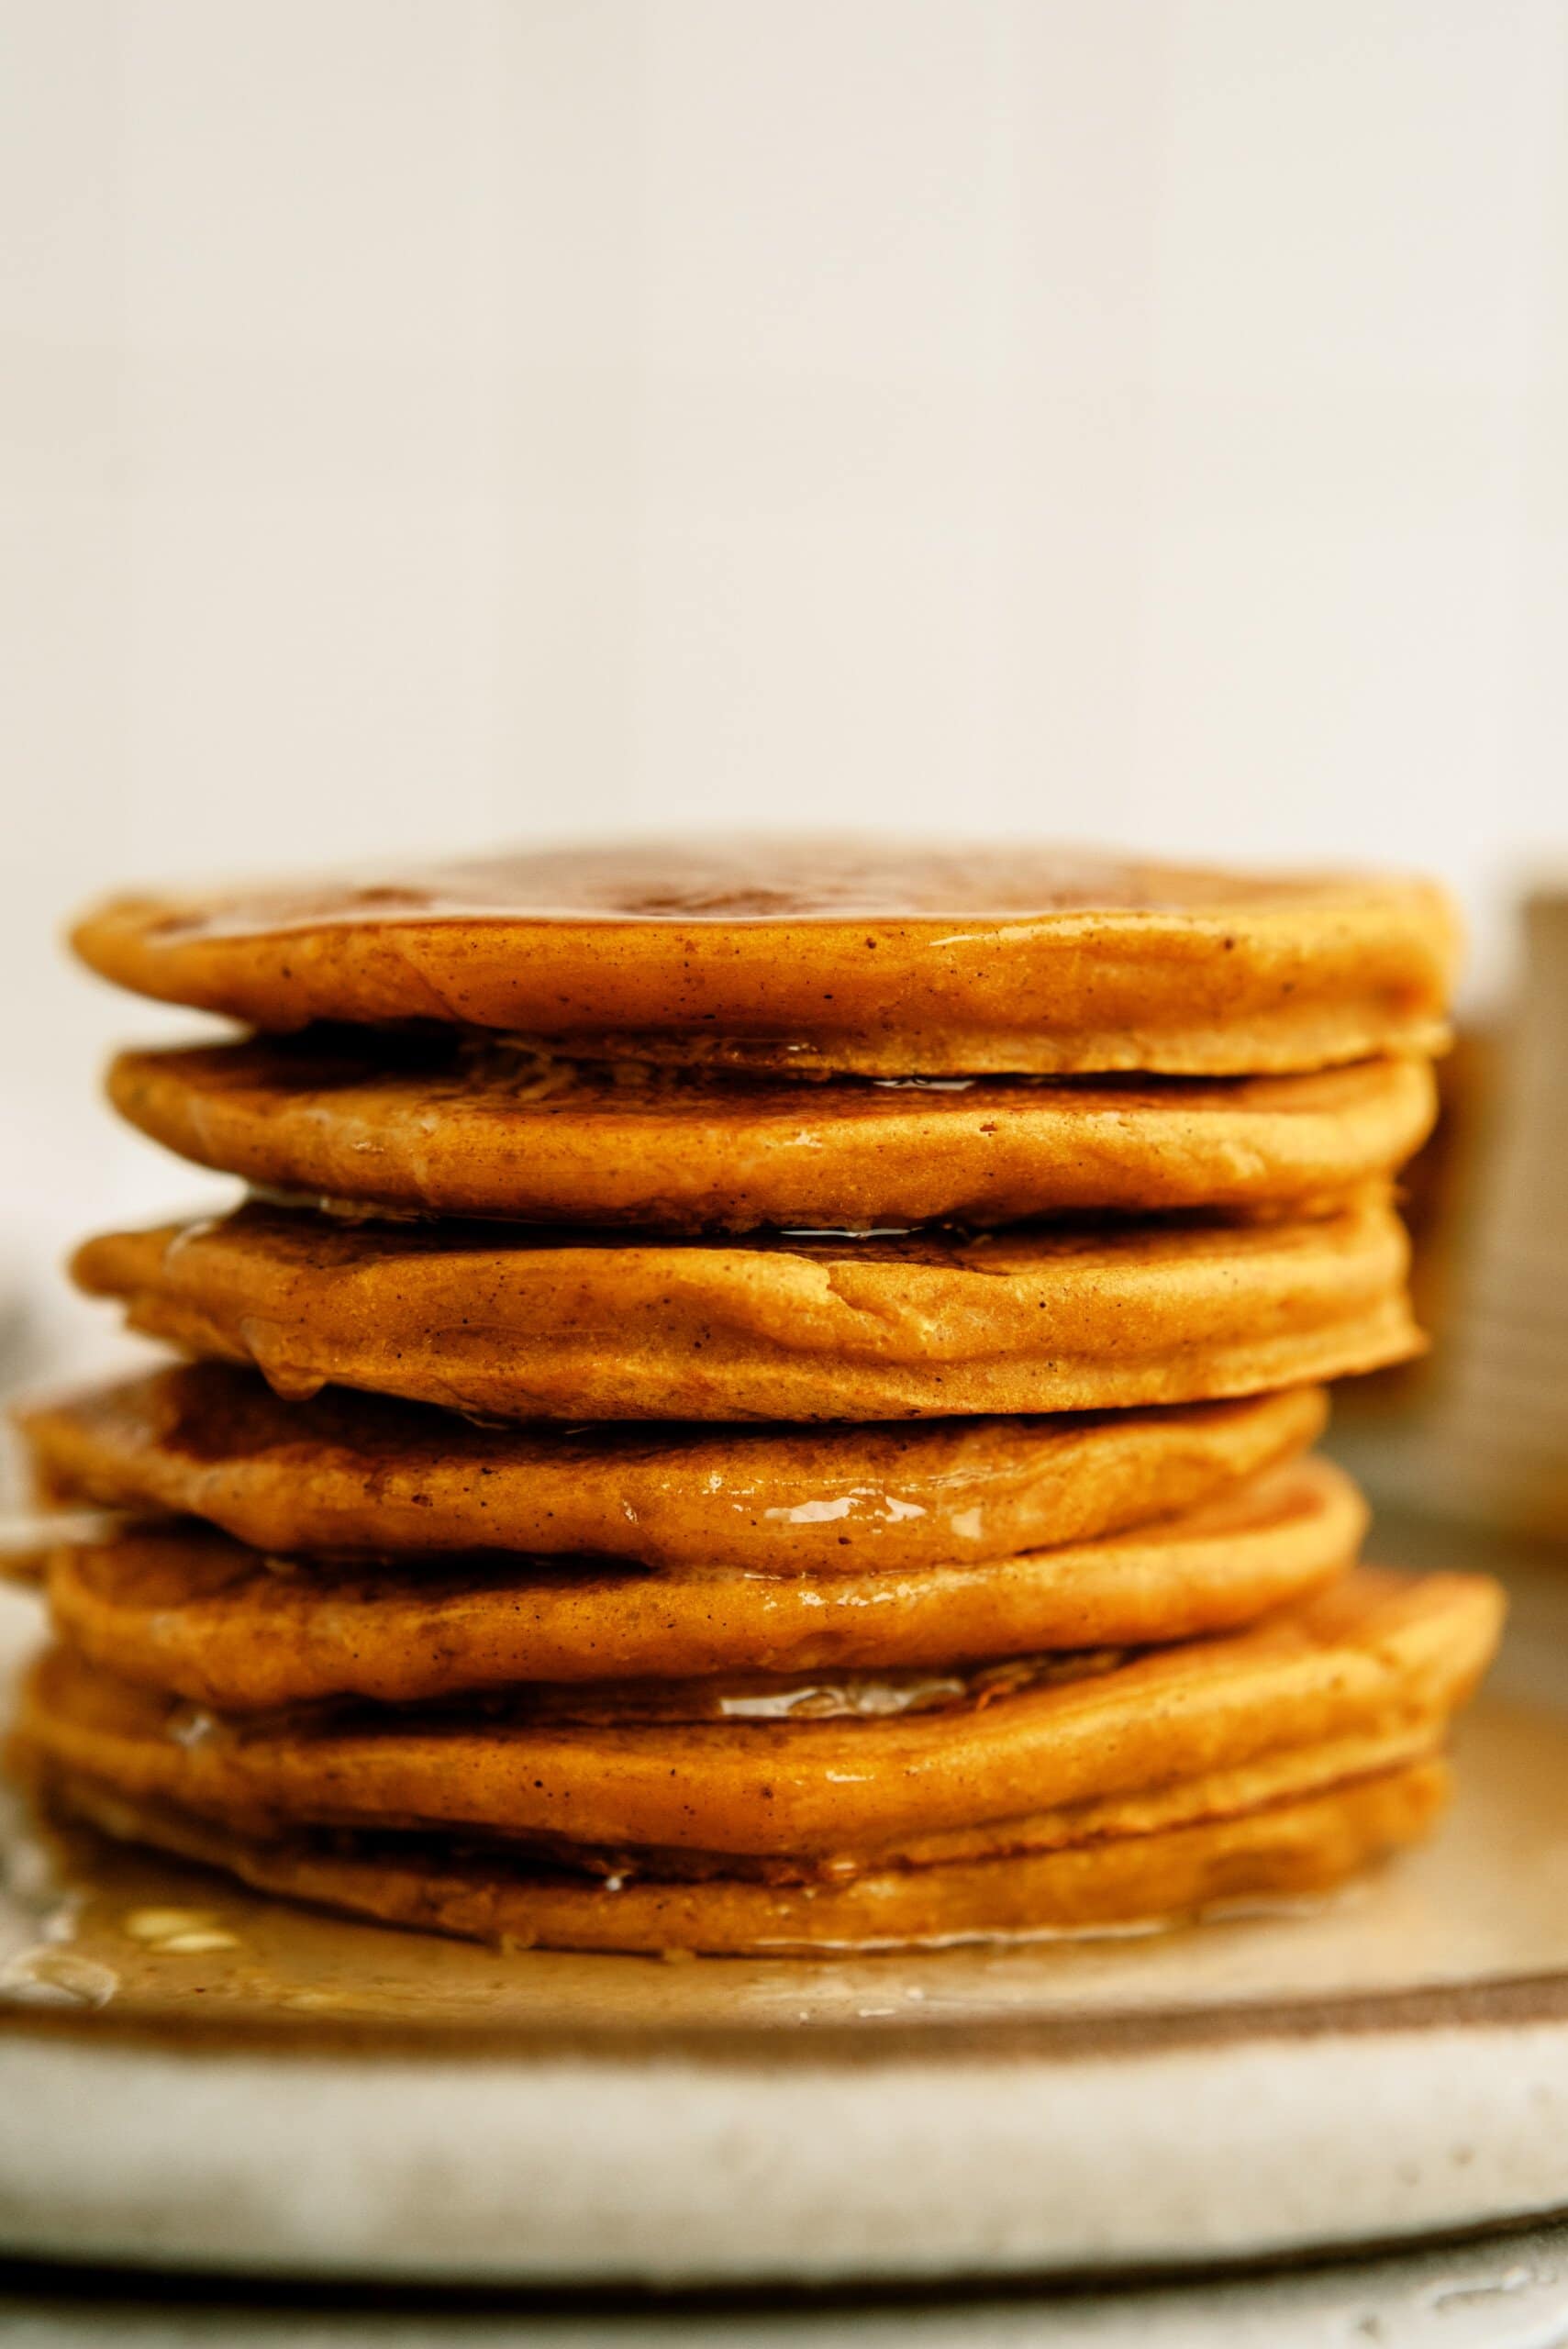 stack of pumpkin pancakes